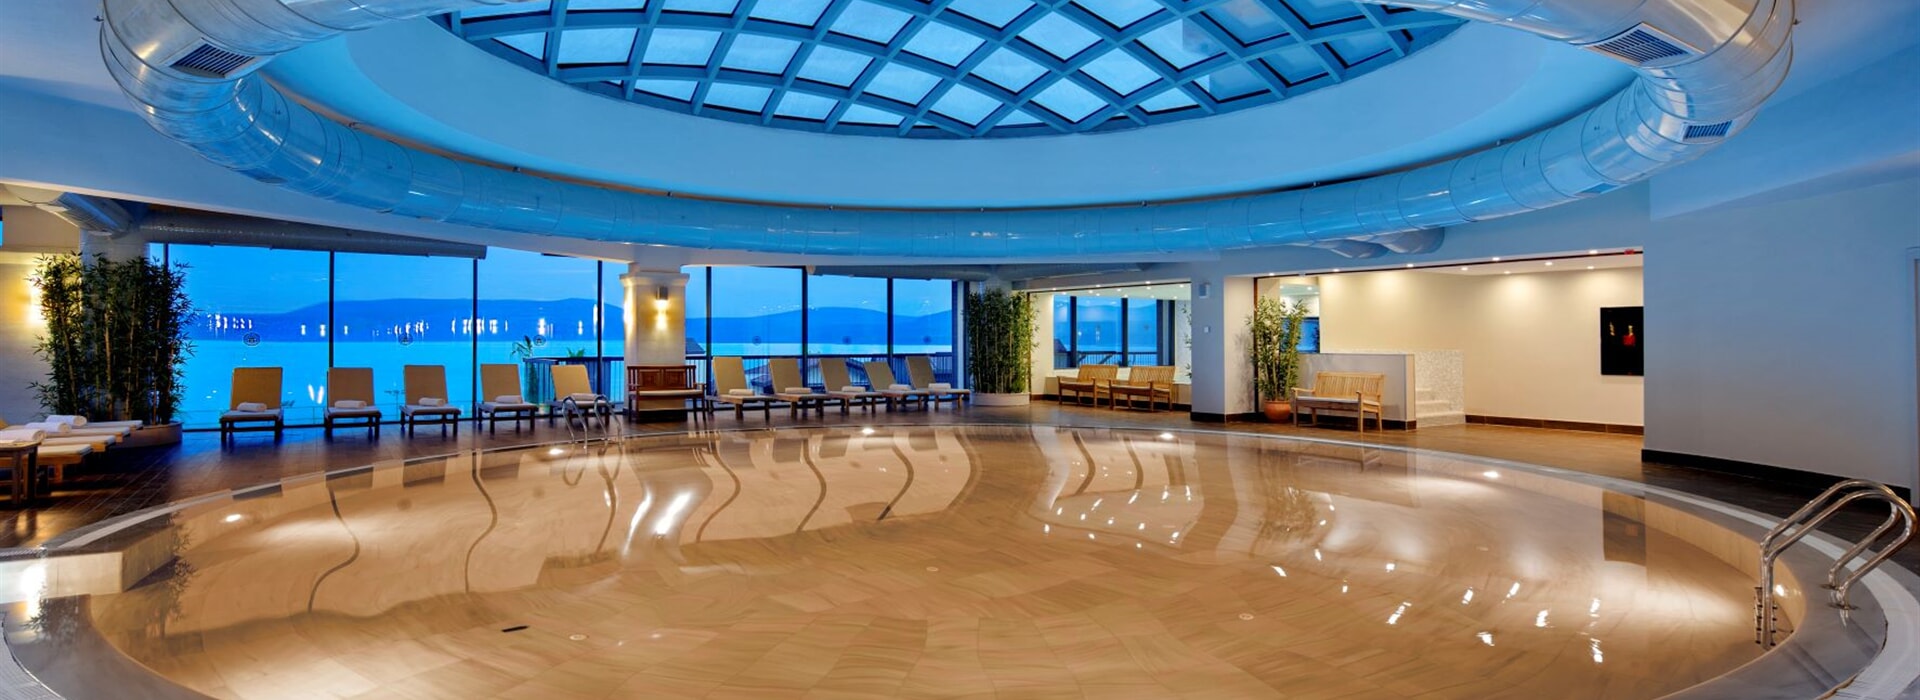 Royal Teos Thermal Resort Clinic & Spa –5-звездочный термальный отель,  размещение  и физиотерапия, реабилитационный центр